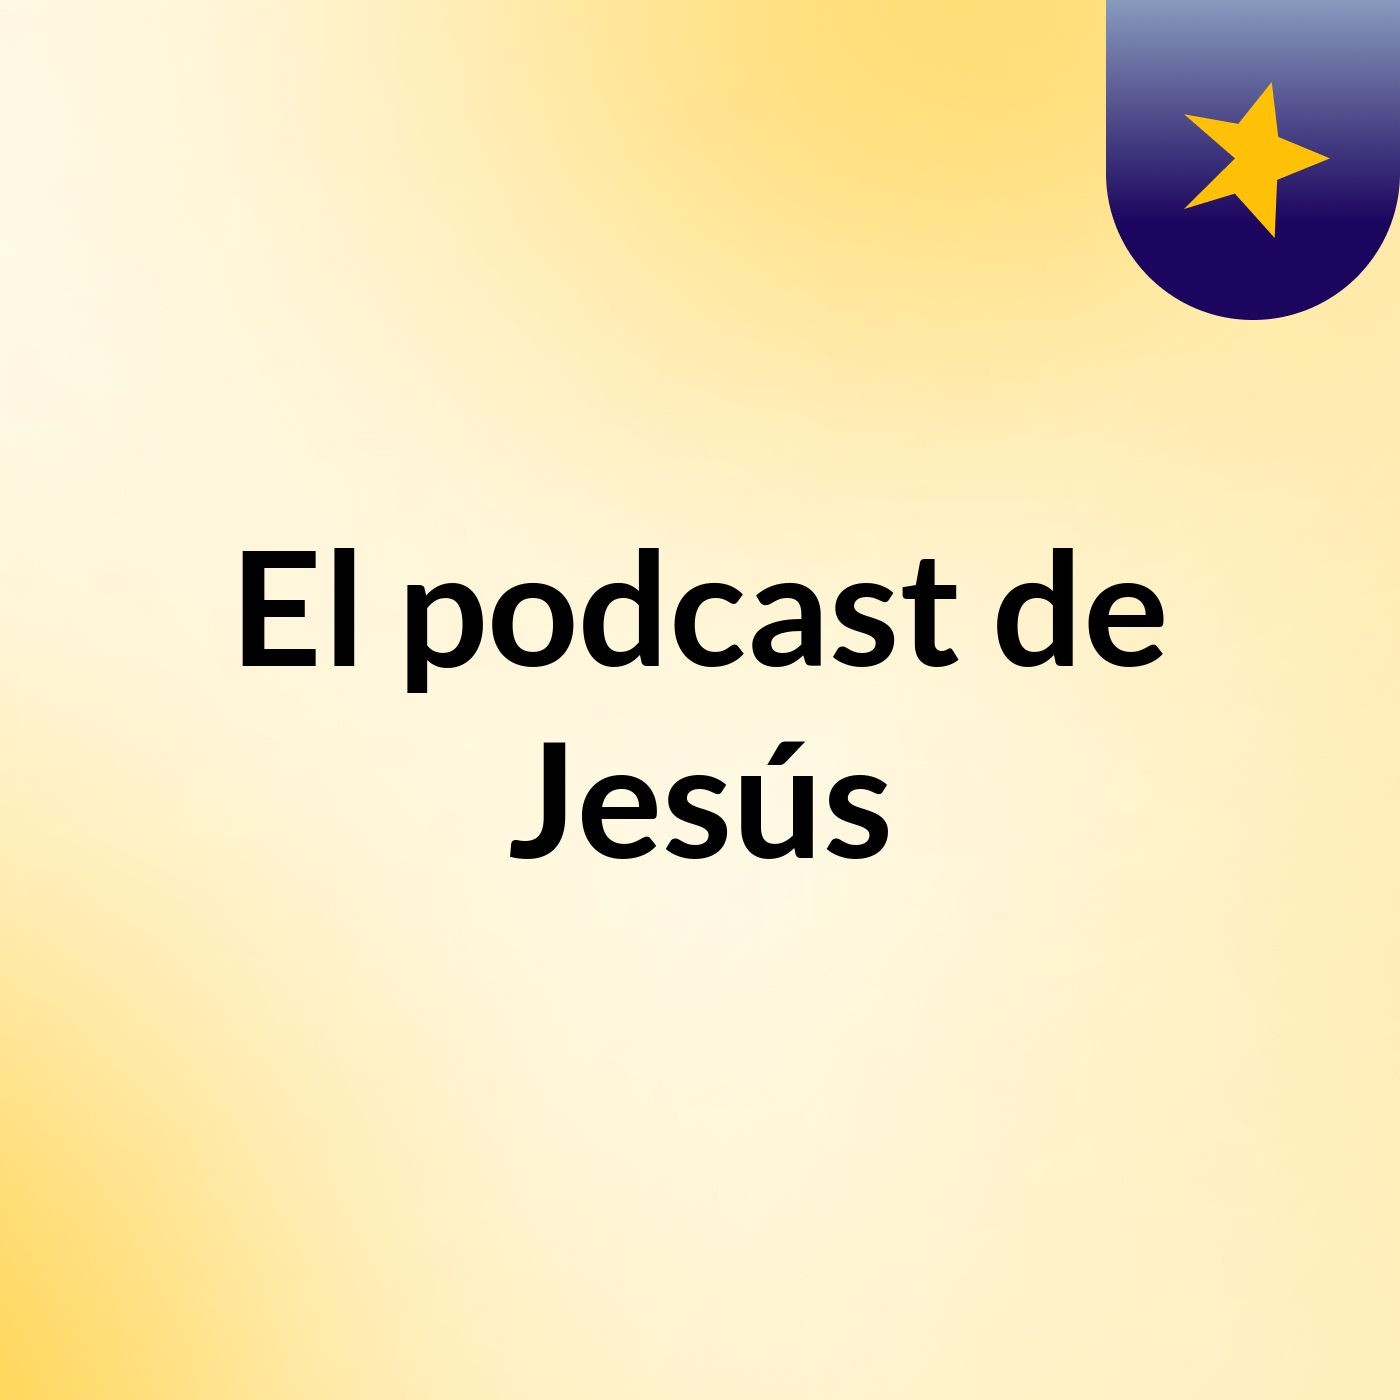 Episodio 13 - El podcast de Jesús